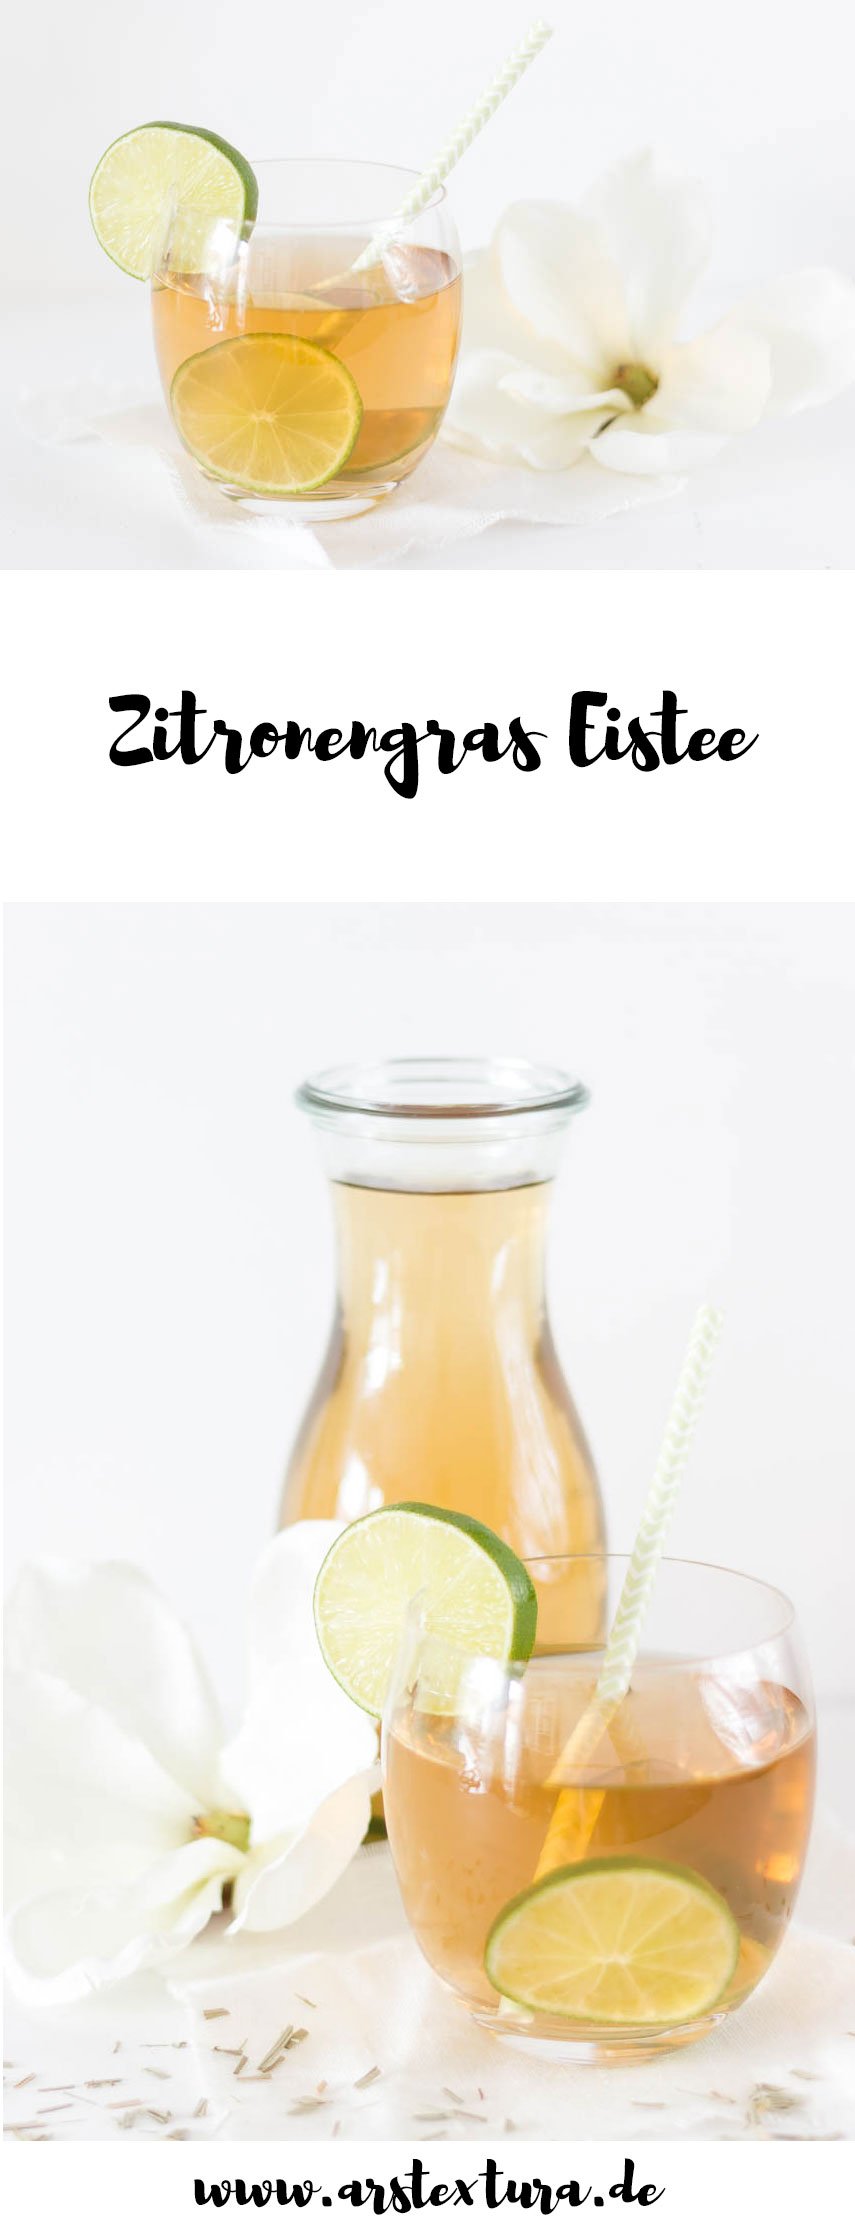 Lecker Drink für den Sommer: Rezept für Zitronengras-Eistee